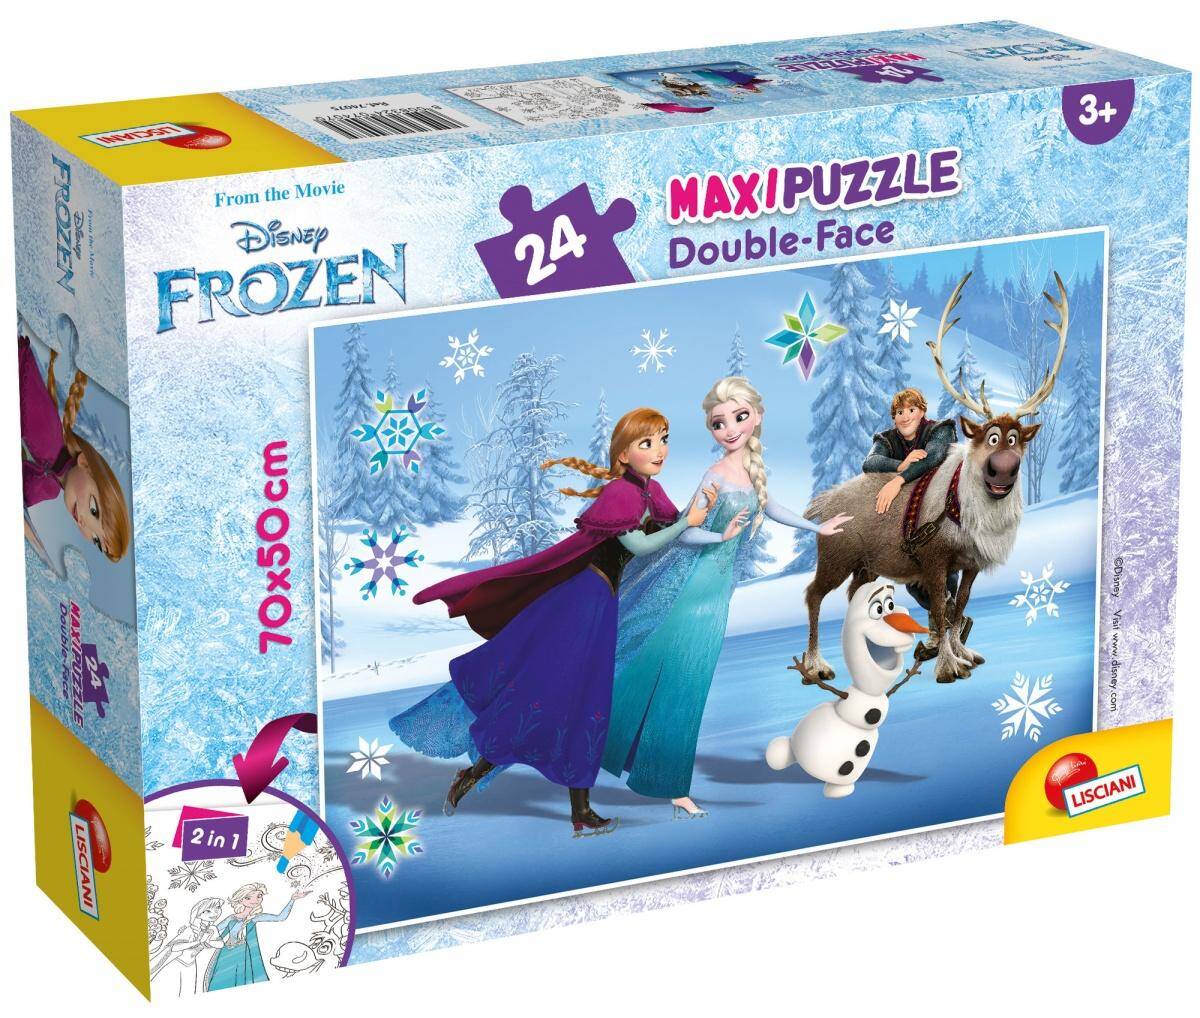 Puzzle 24 maxi double-face Frozen 304-74075